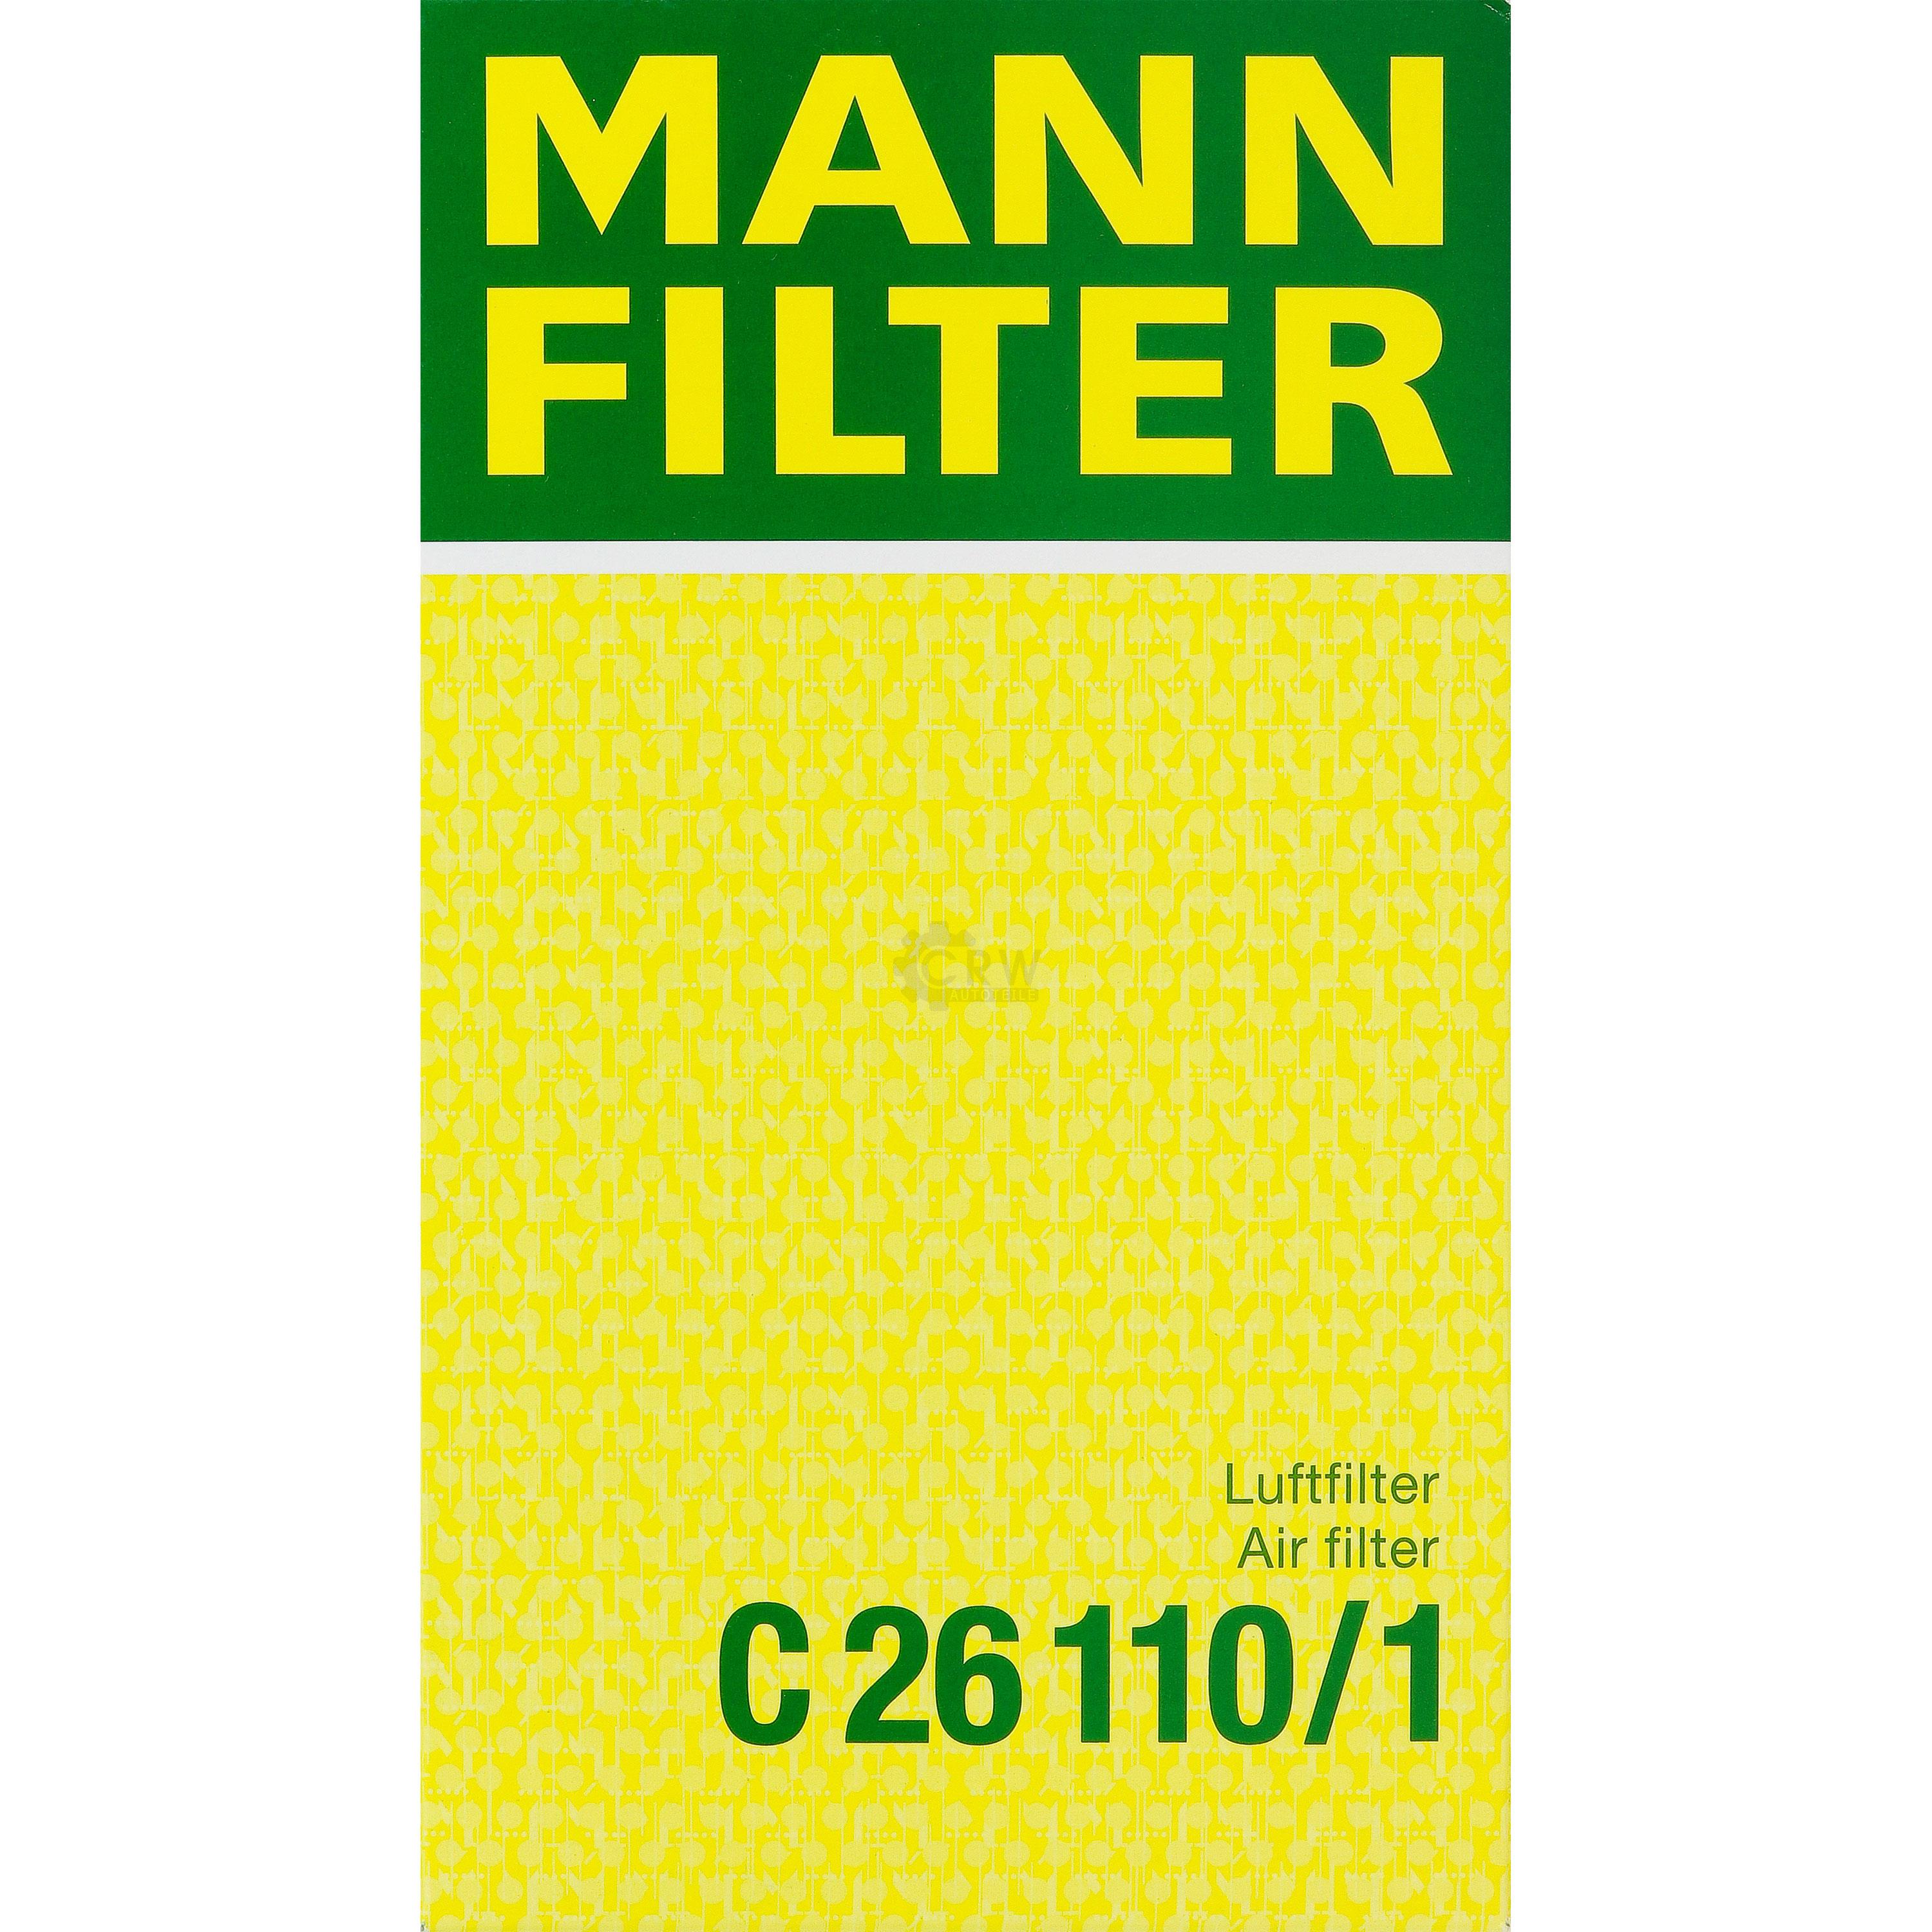 MANN-FILTER Luftfilter für BMW 3er Cabriolet E36 318i E30 320i 316i Bertone